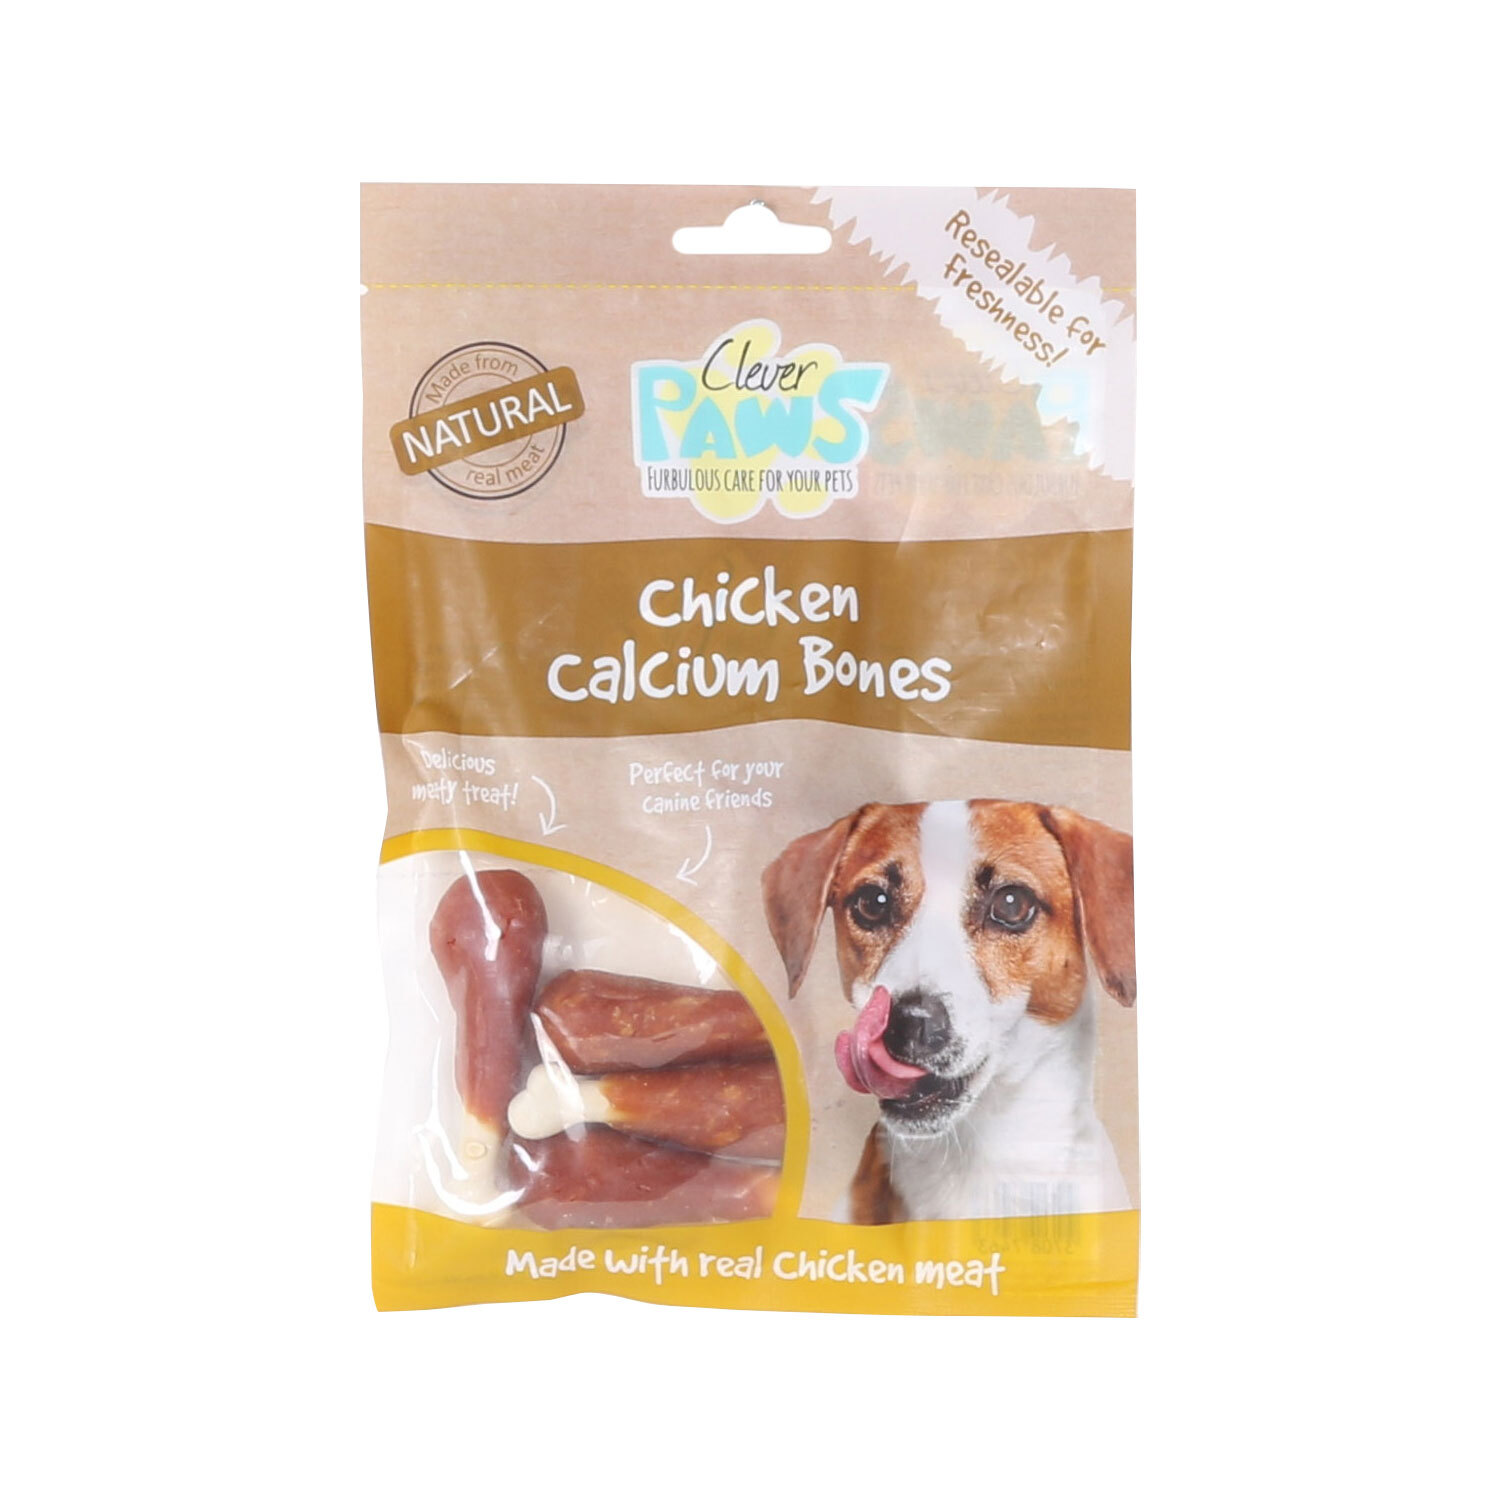 Chicken Calcium Bones Image